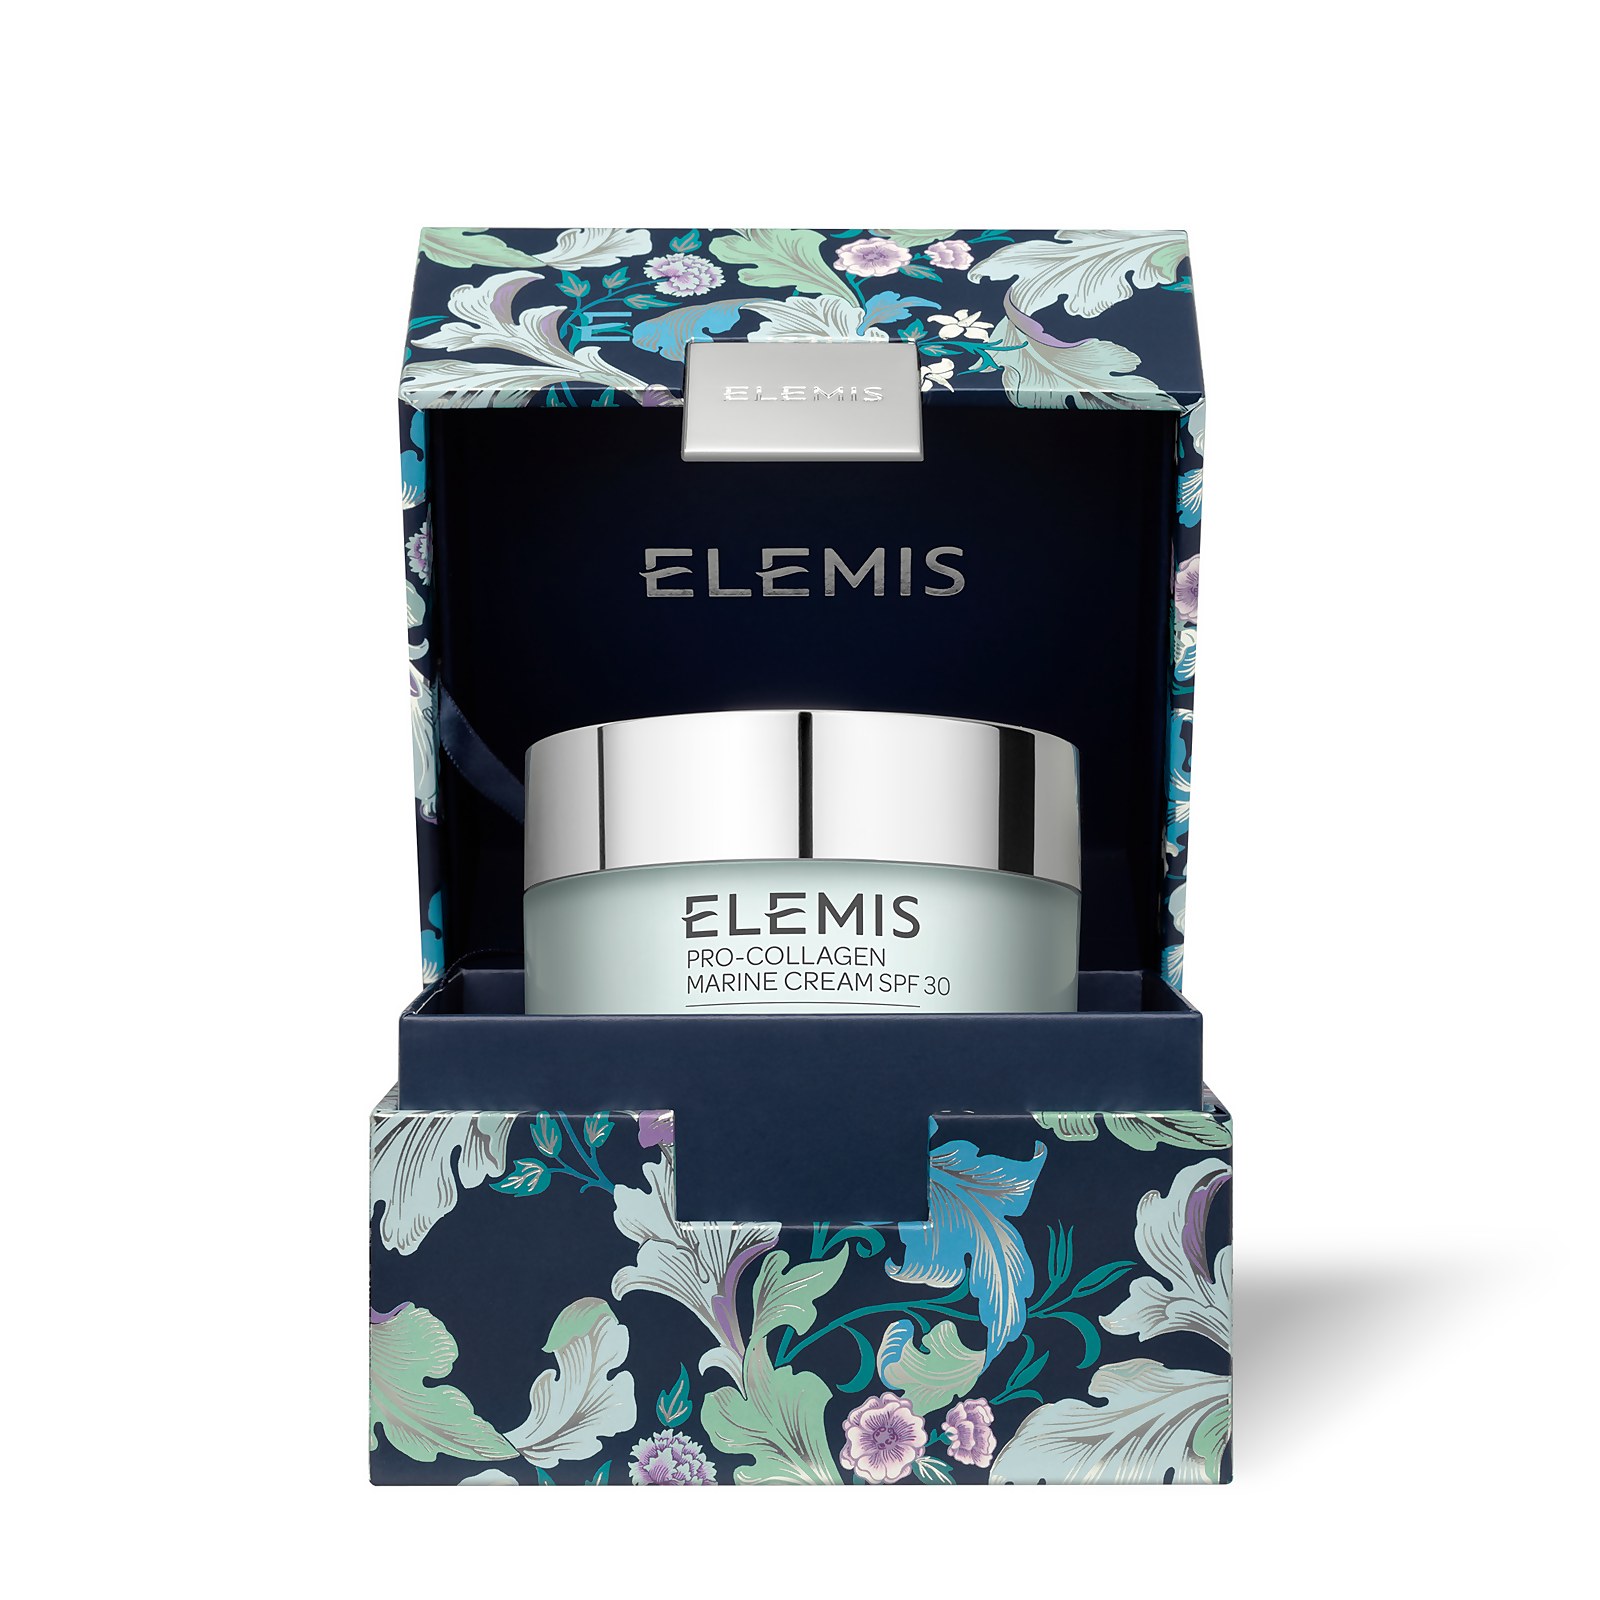 Elemis Limited Edition Pro-collagen Marine Cream Spf 30 100ml In Blue